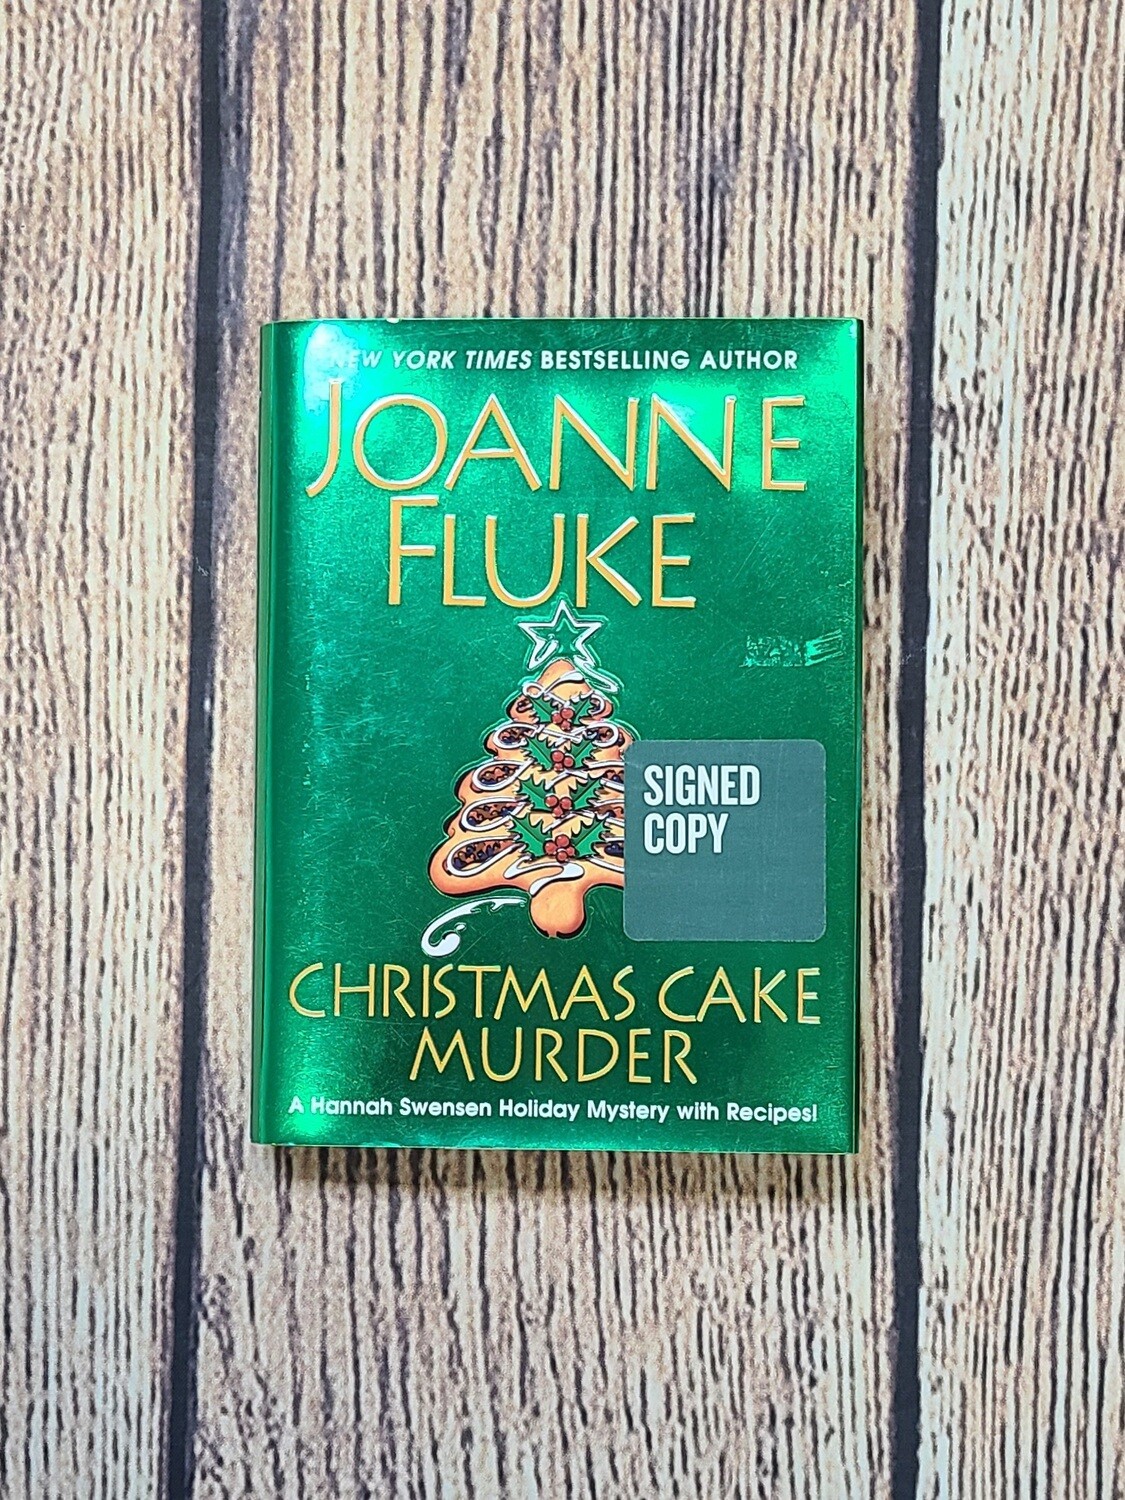 Christmas Cake Murder by Joanne Fluke - Signed Copy